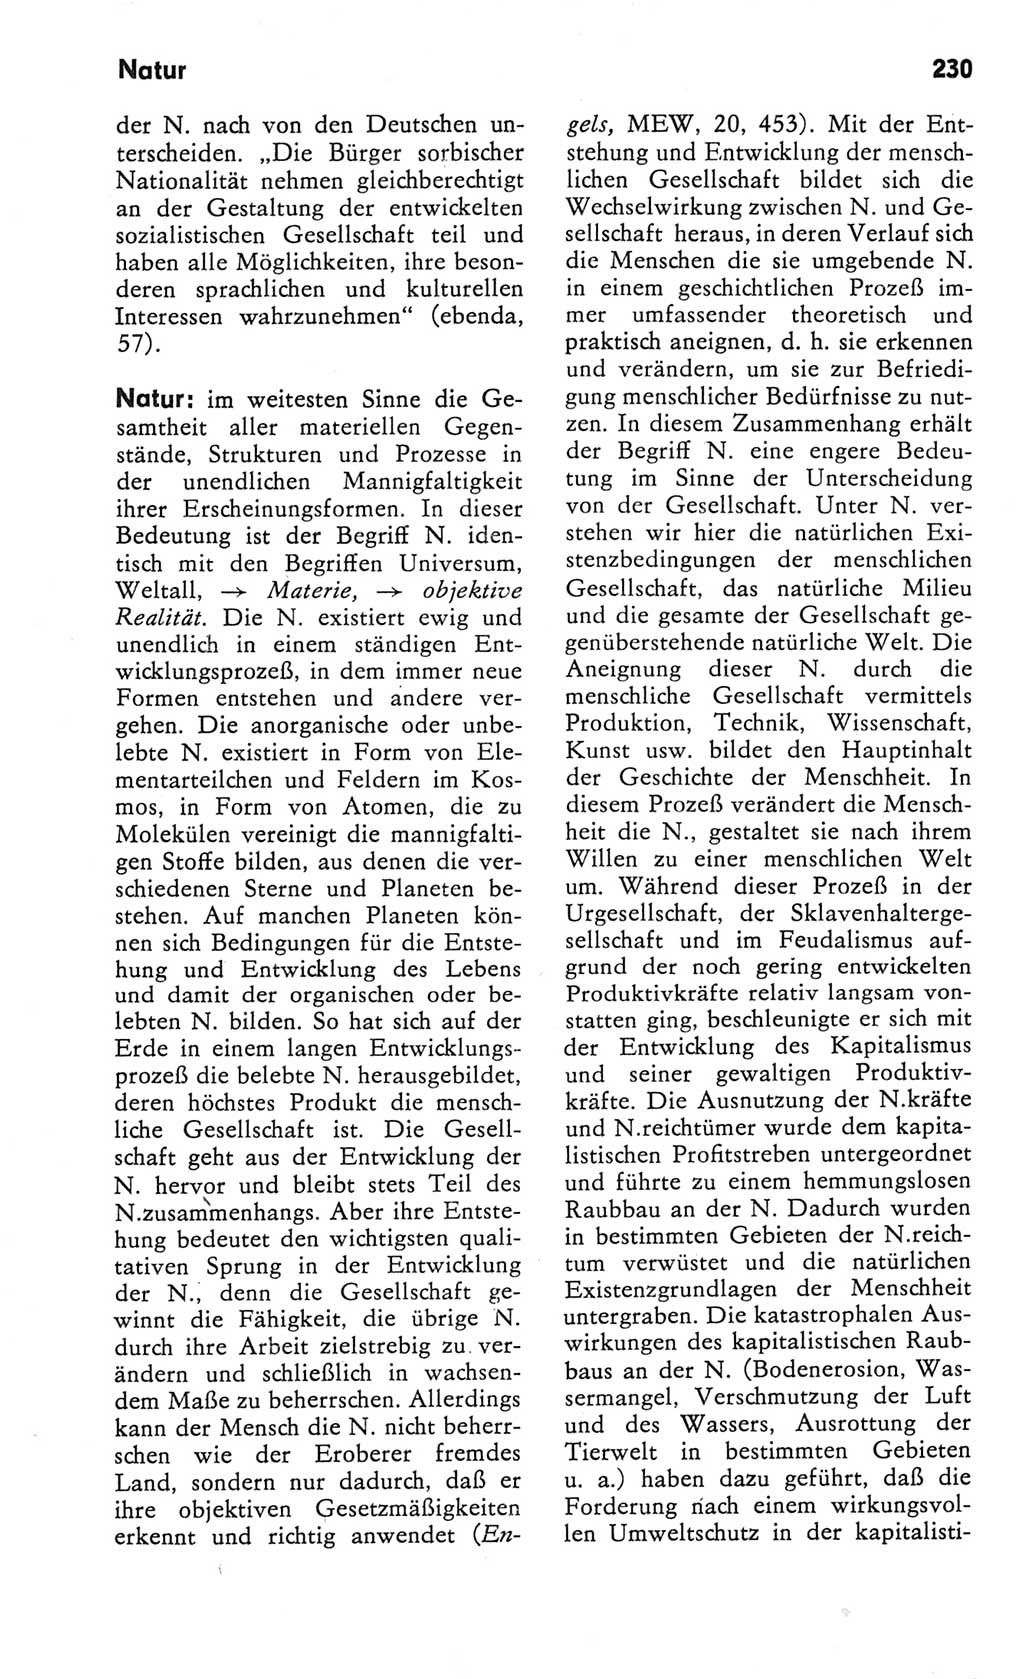 Kleines Wörterbuch der marxistisch-leninistischen Philosophie [Deutsche Demokratische Republik (DDR)] 1982, Seite 230 (Kl. Wb. ML Phil. DDR 1982, S. 230)